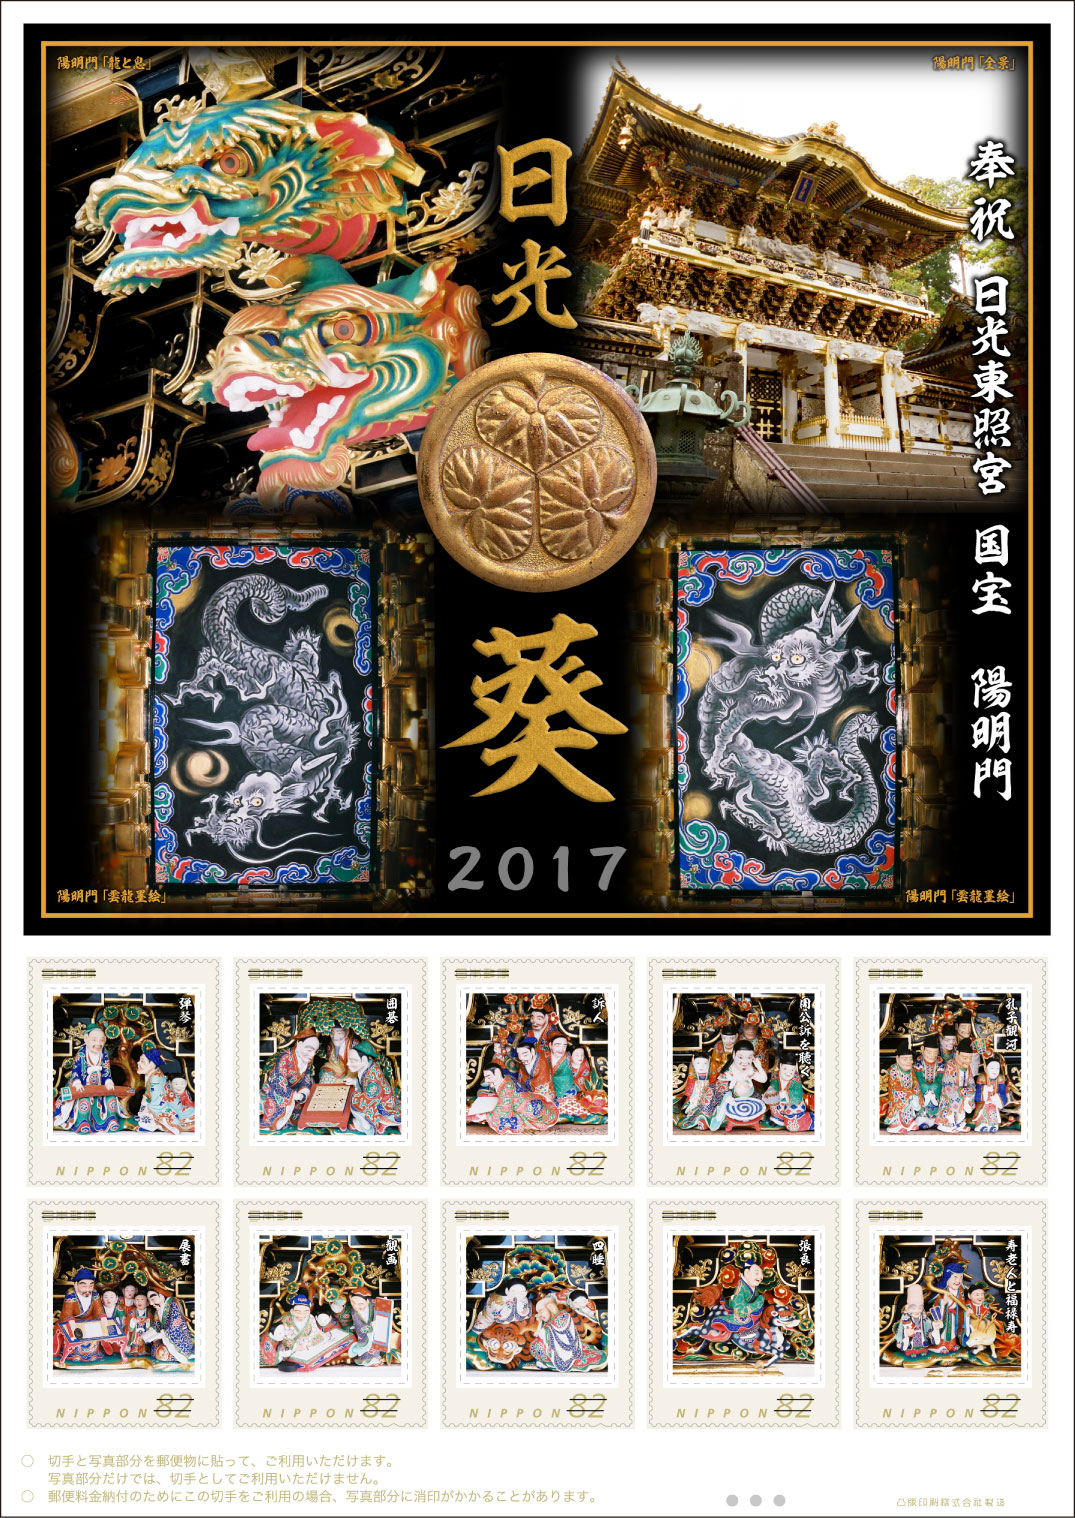 オリジナルフレーム切手「日光葵」の販売開始 - 日本郵便